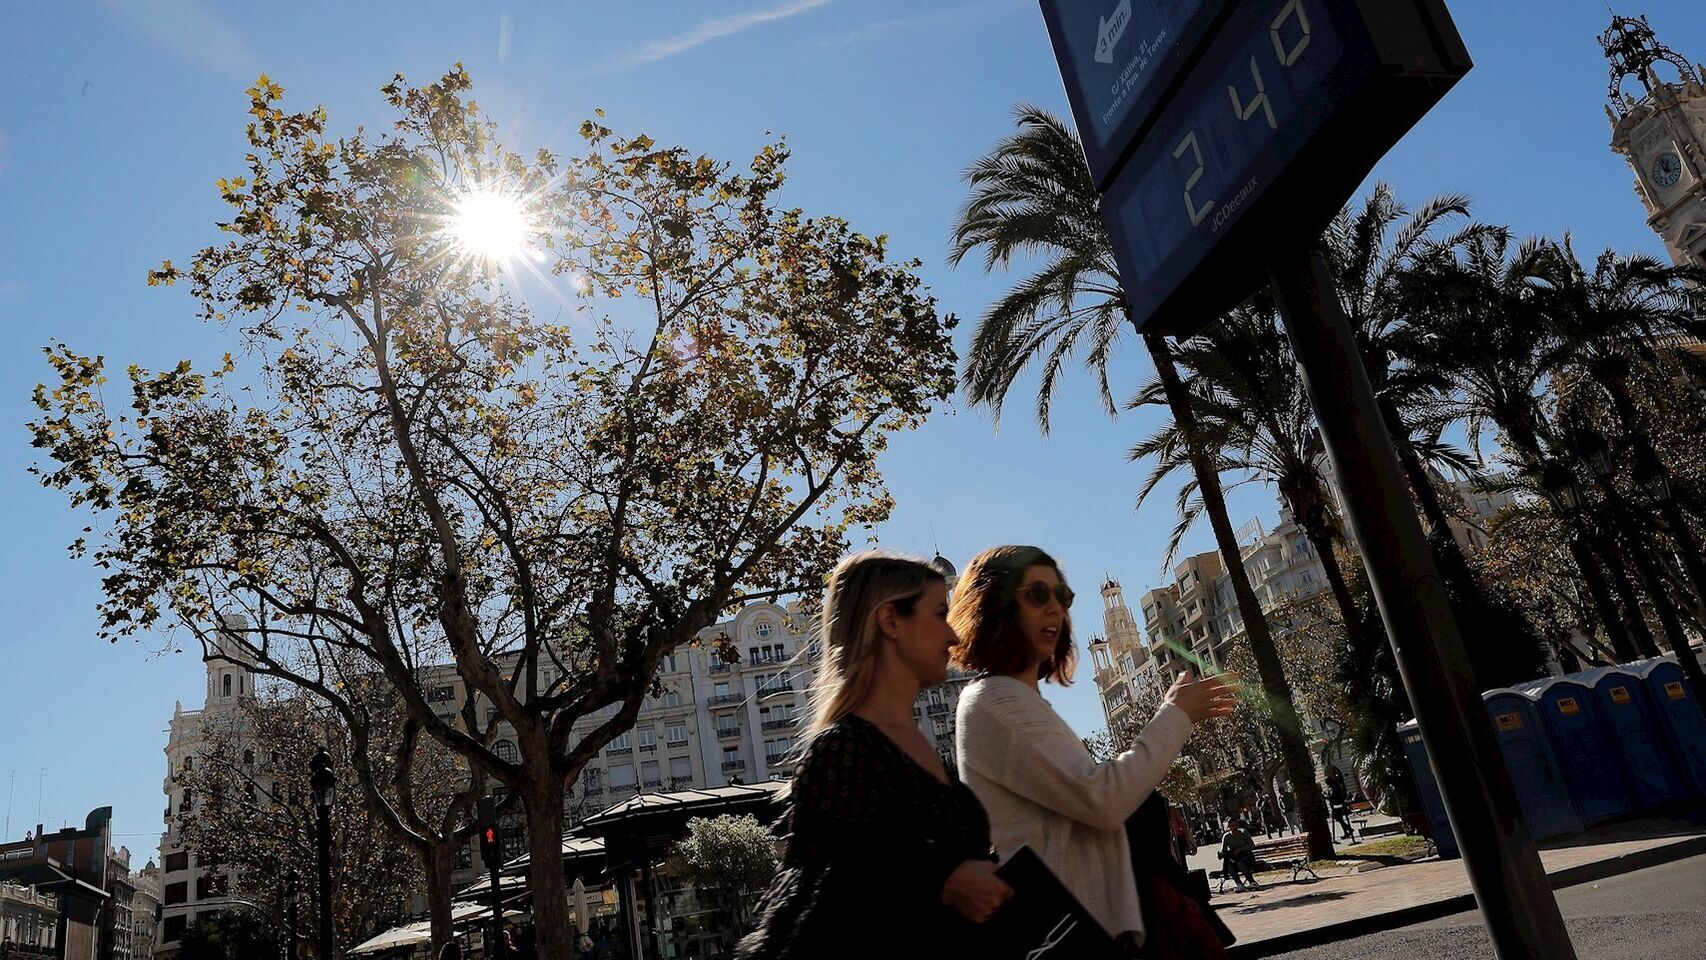 Una imagen de la Plaza del Ayuntamiento de Valencia donde un termómetro marca 24 grados a comienzos de febrero.